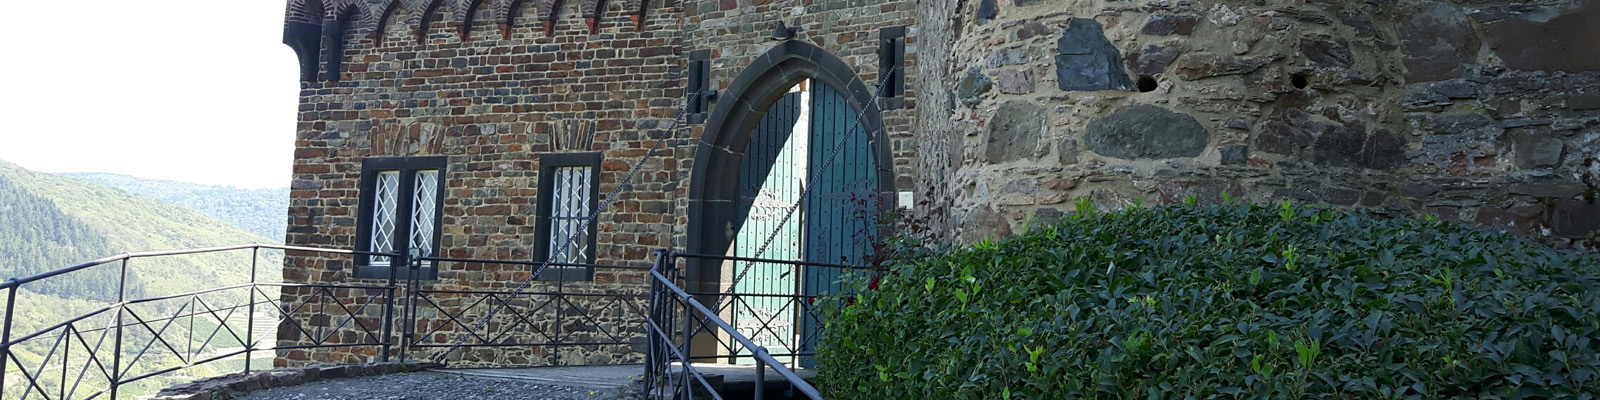 Eingangstor zur Burg Sooneck